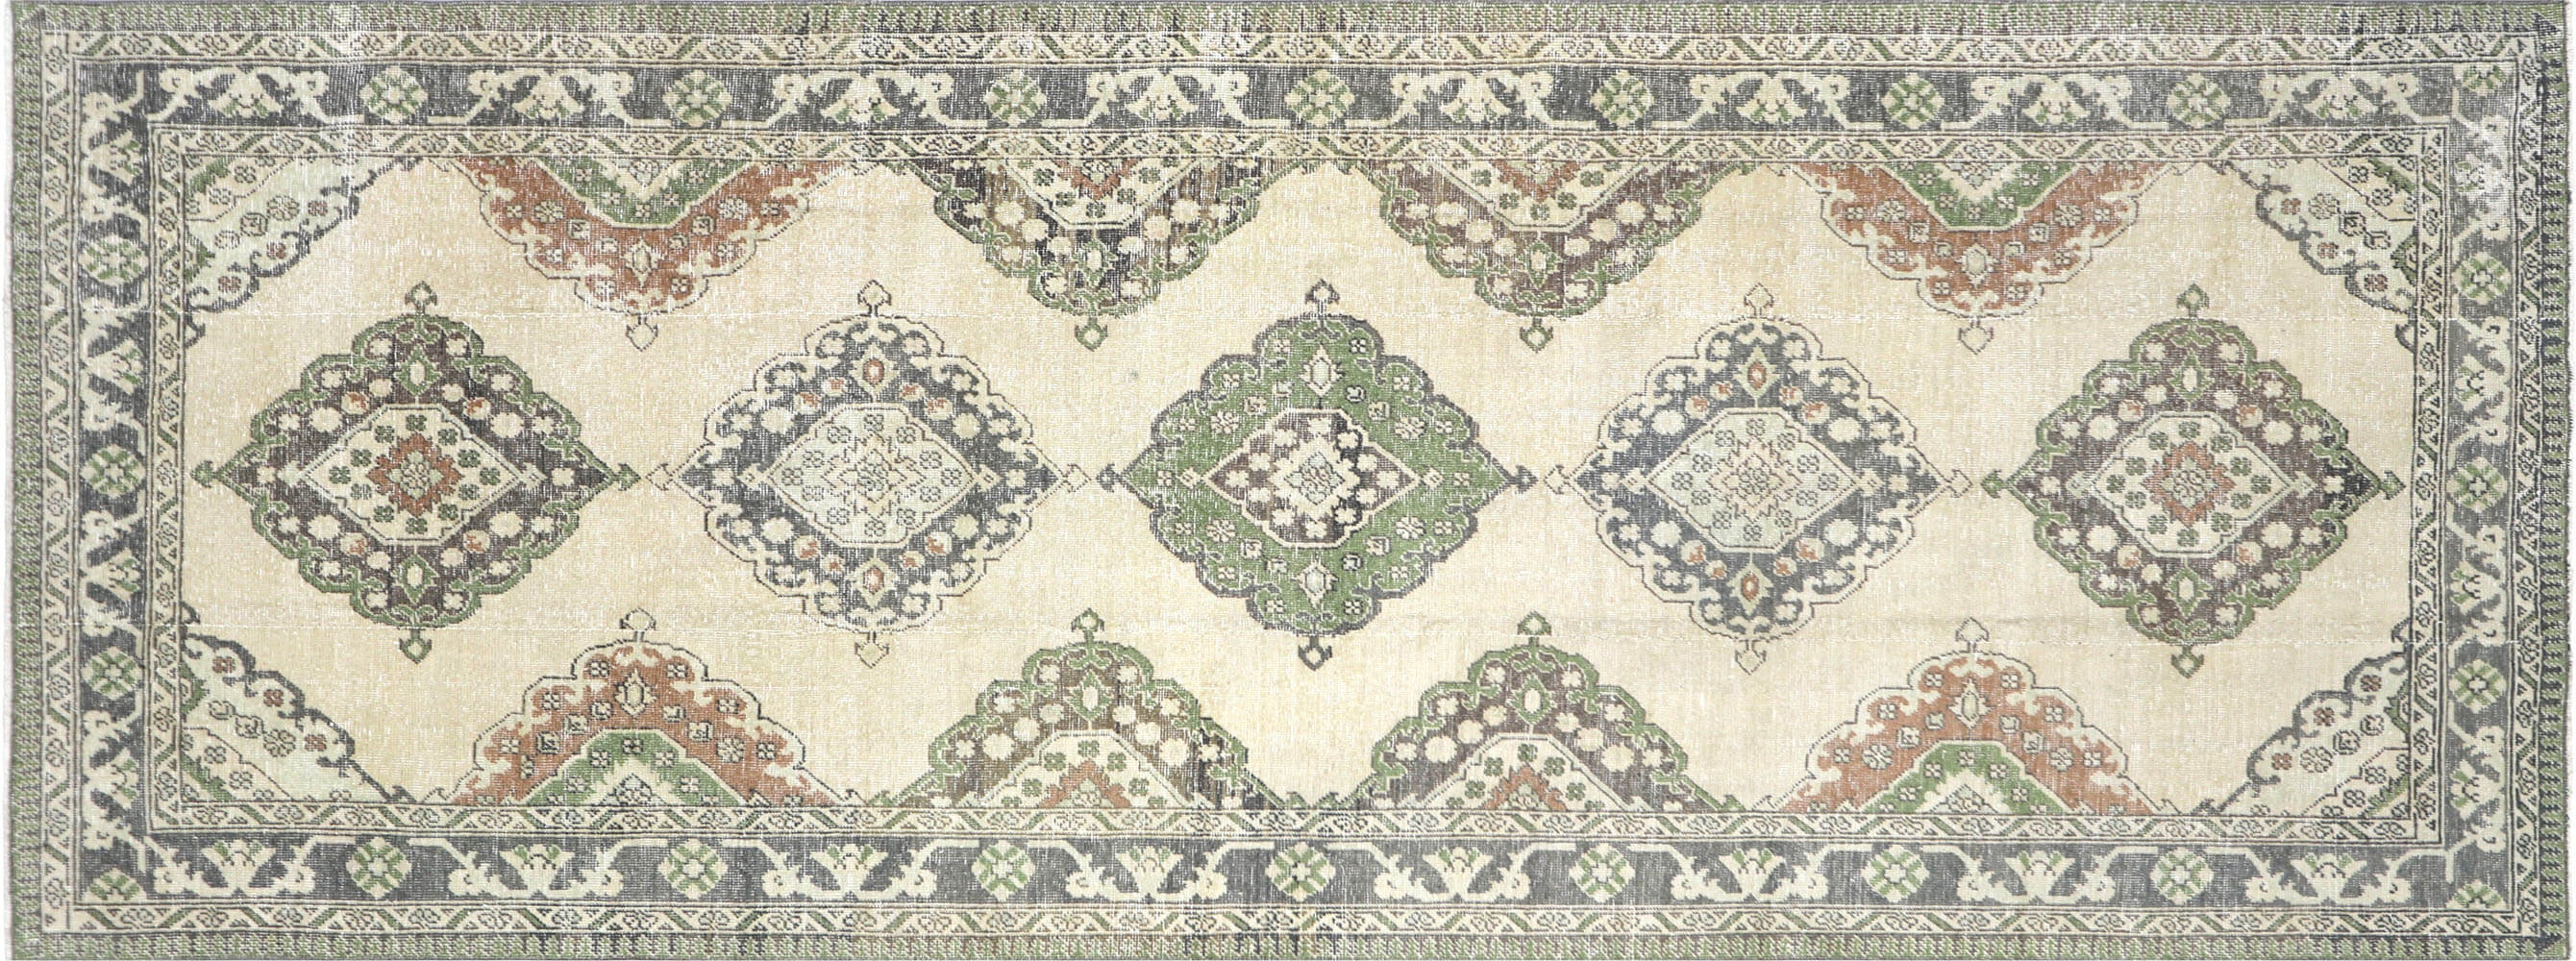 Vintage Turkish Oushak Carpet - 4'8" x 12'6"